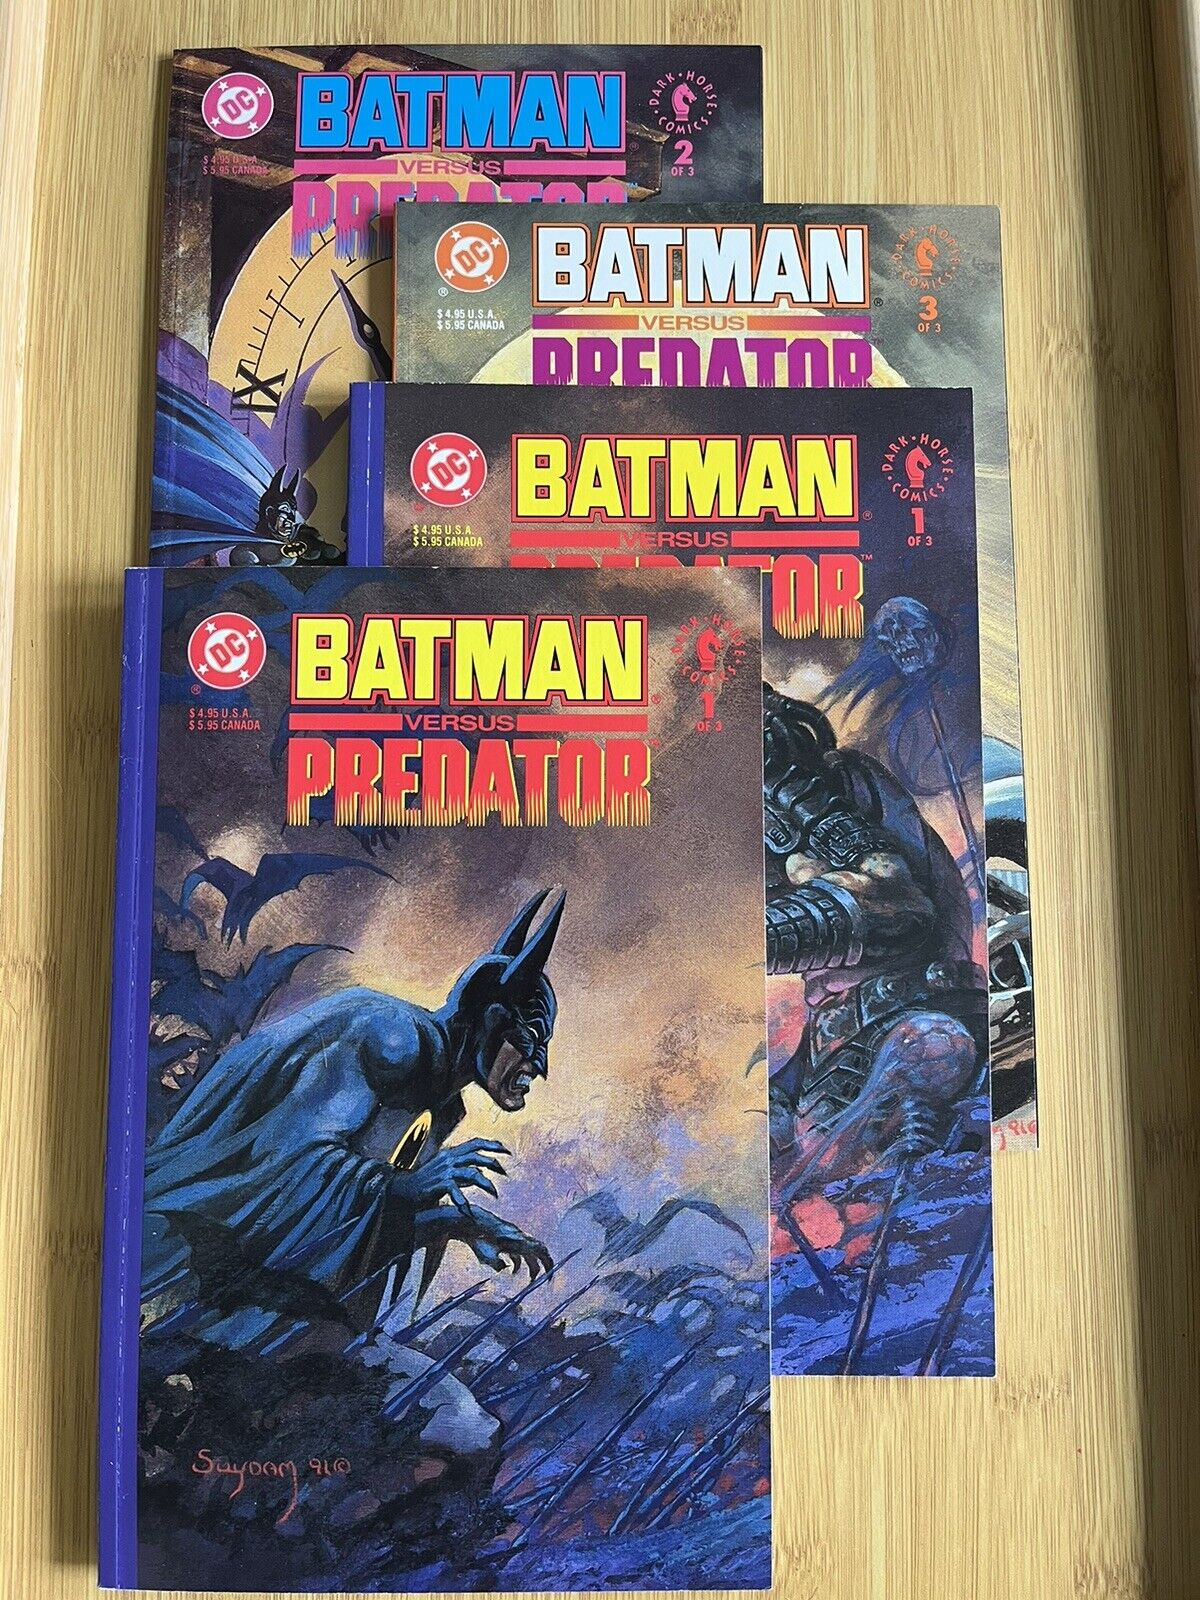 Batman vs Predator 1-3 - Prestige format set